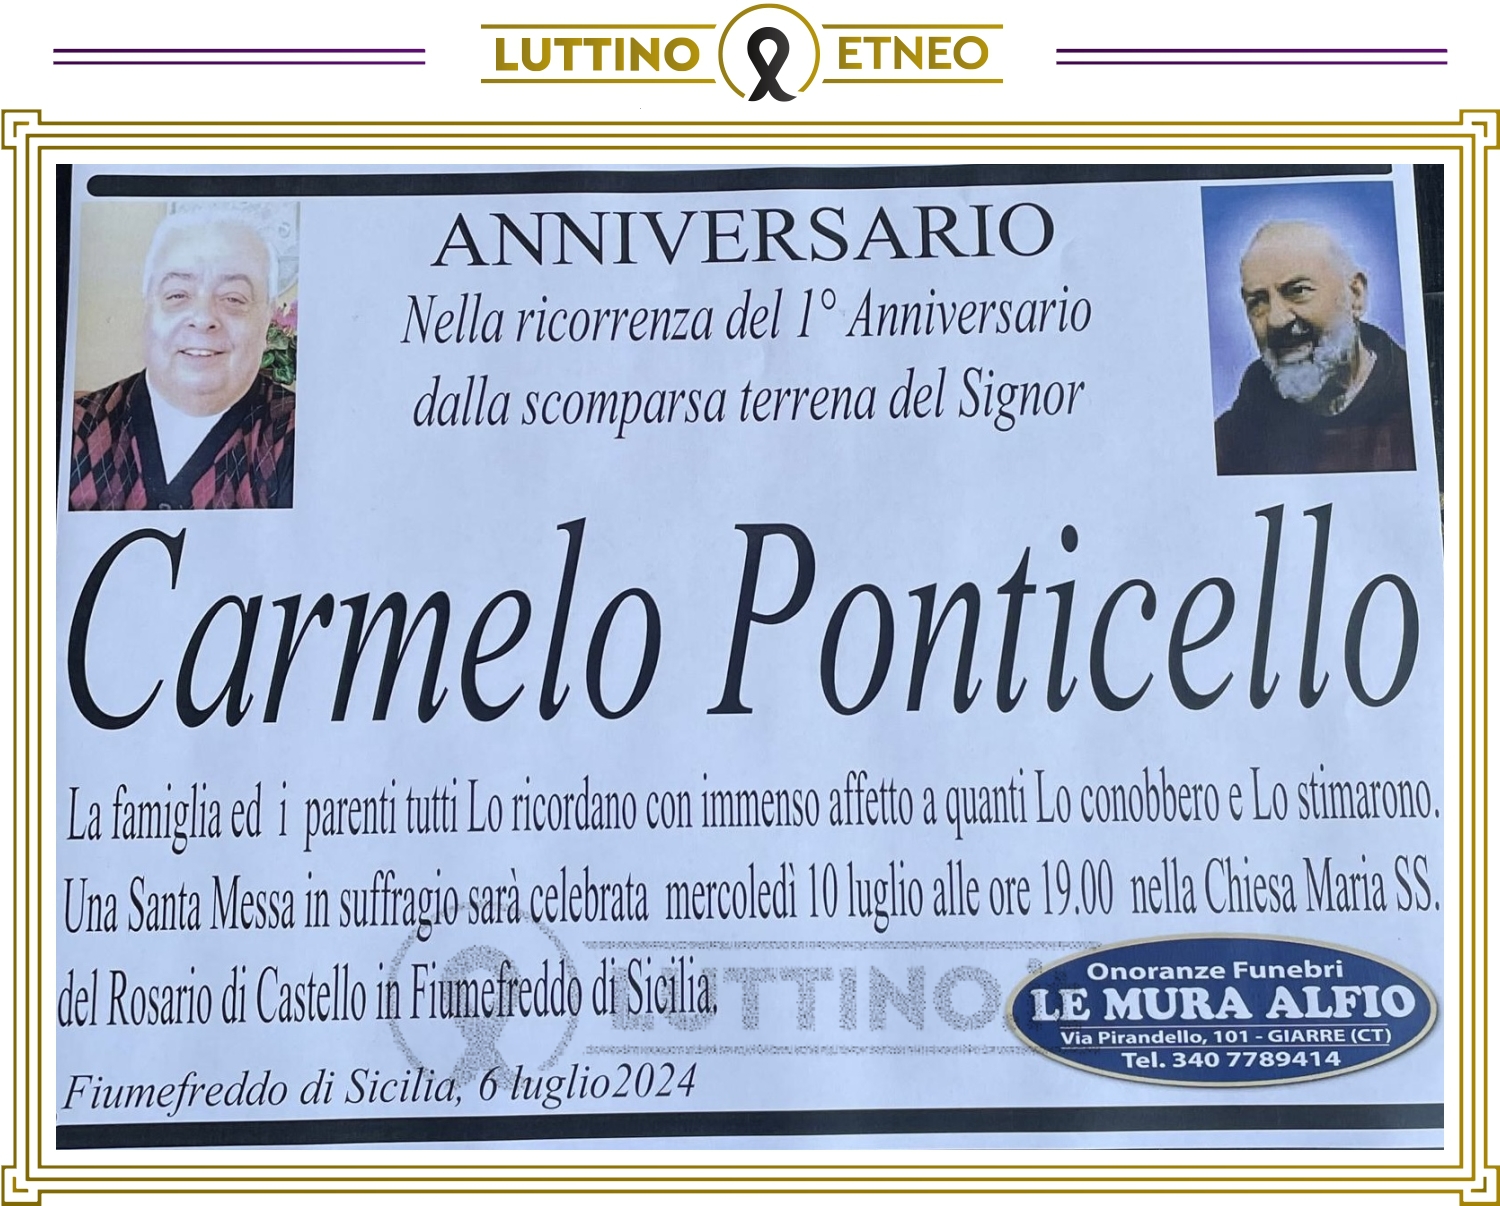 Carmelo Ponticello